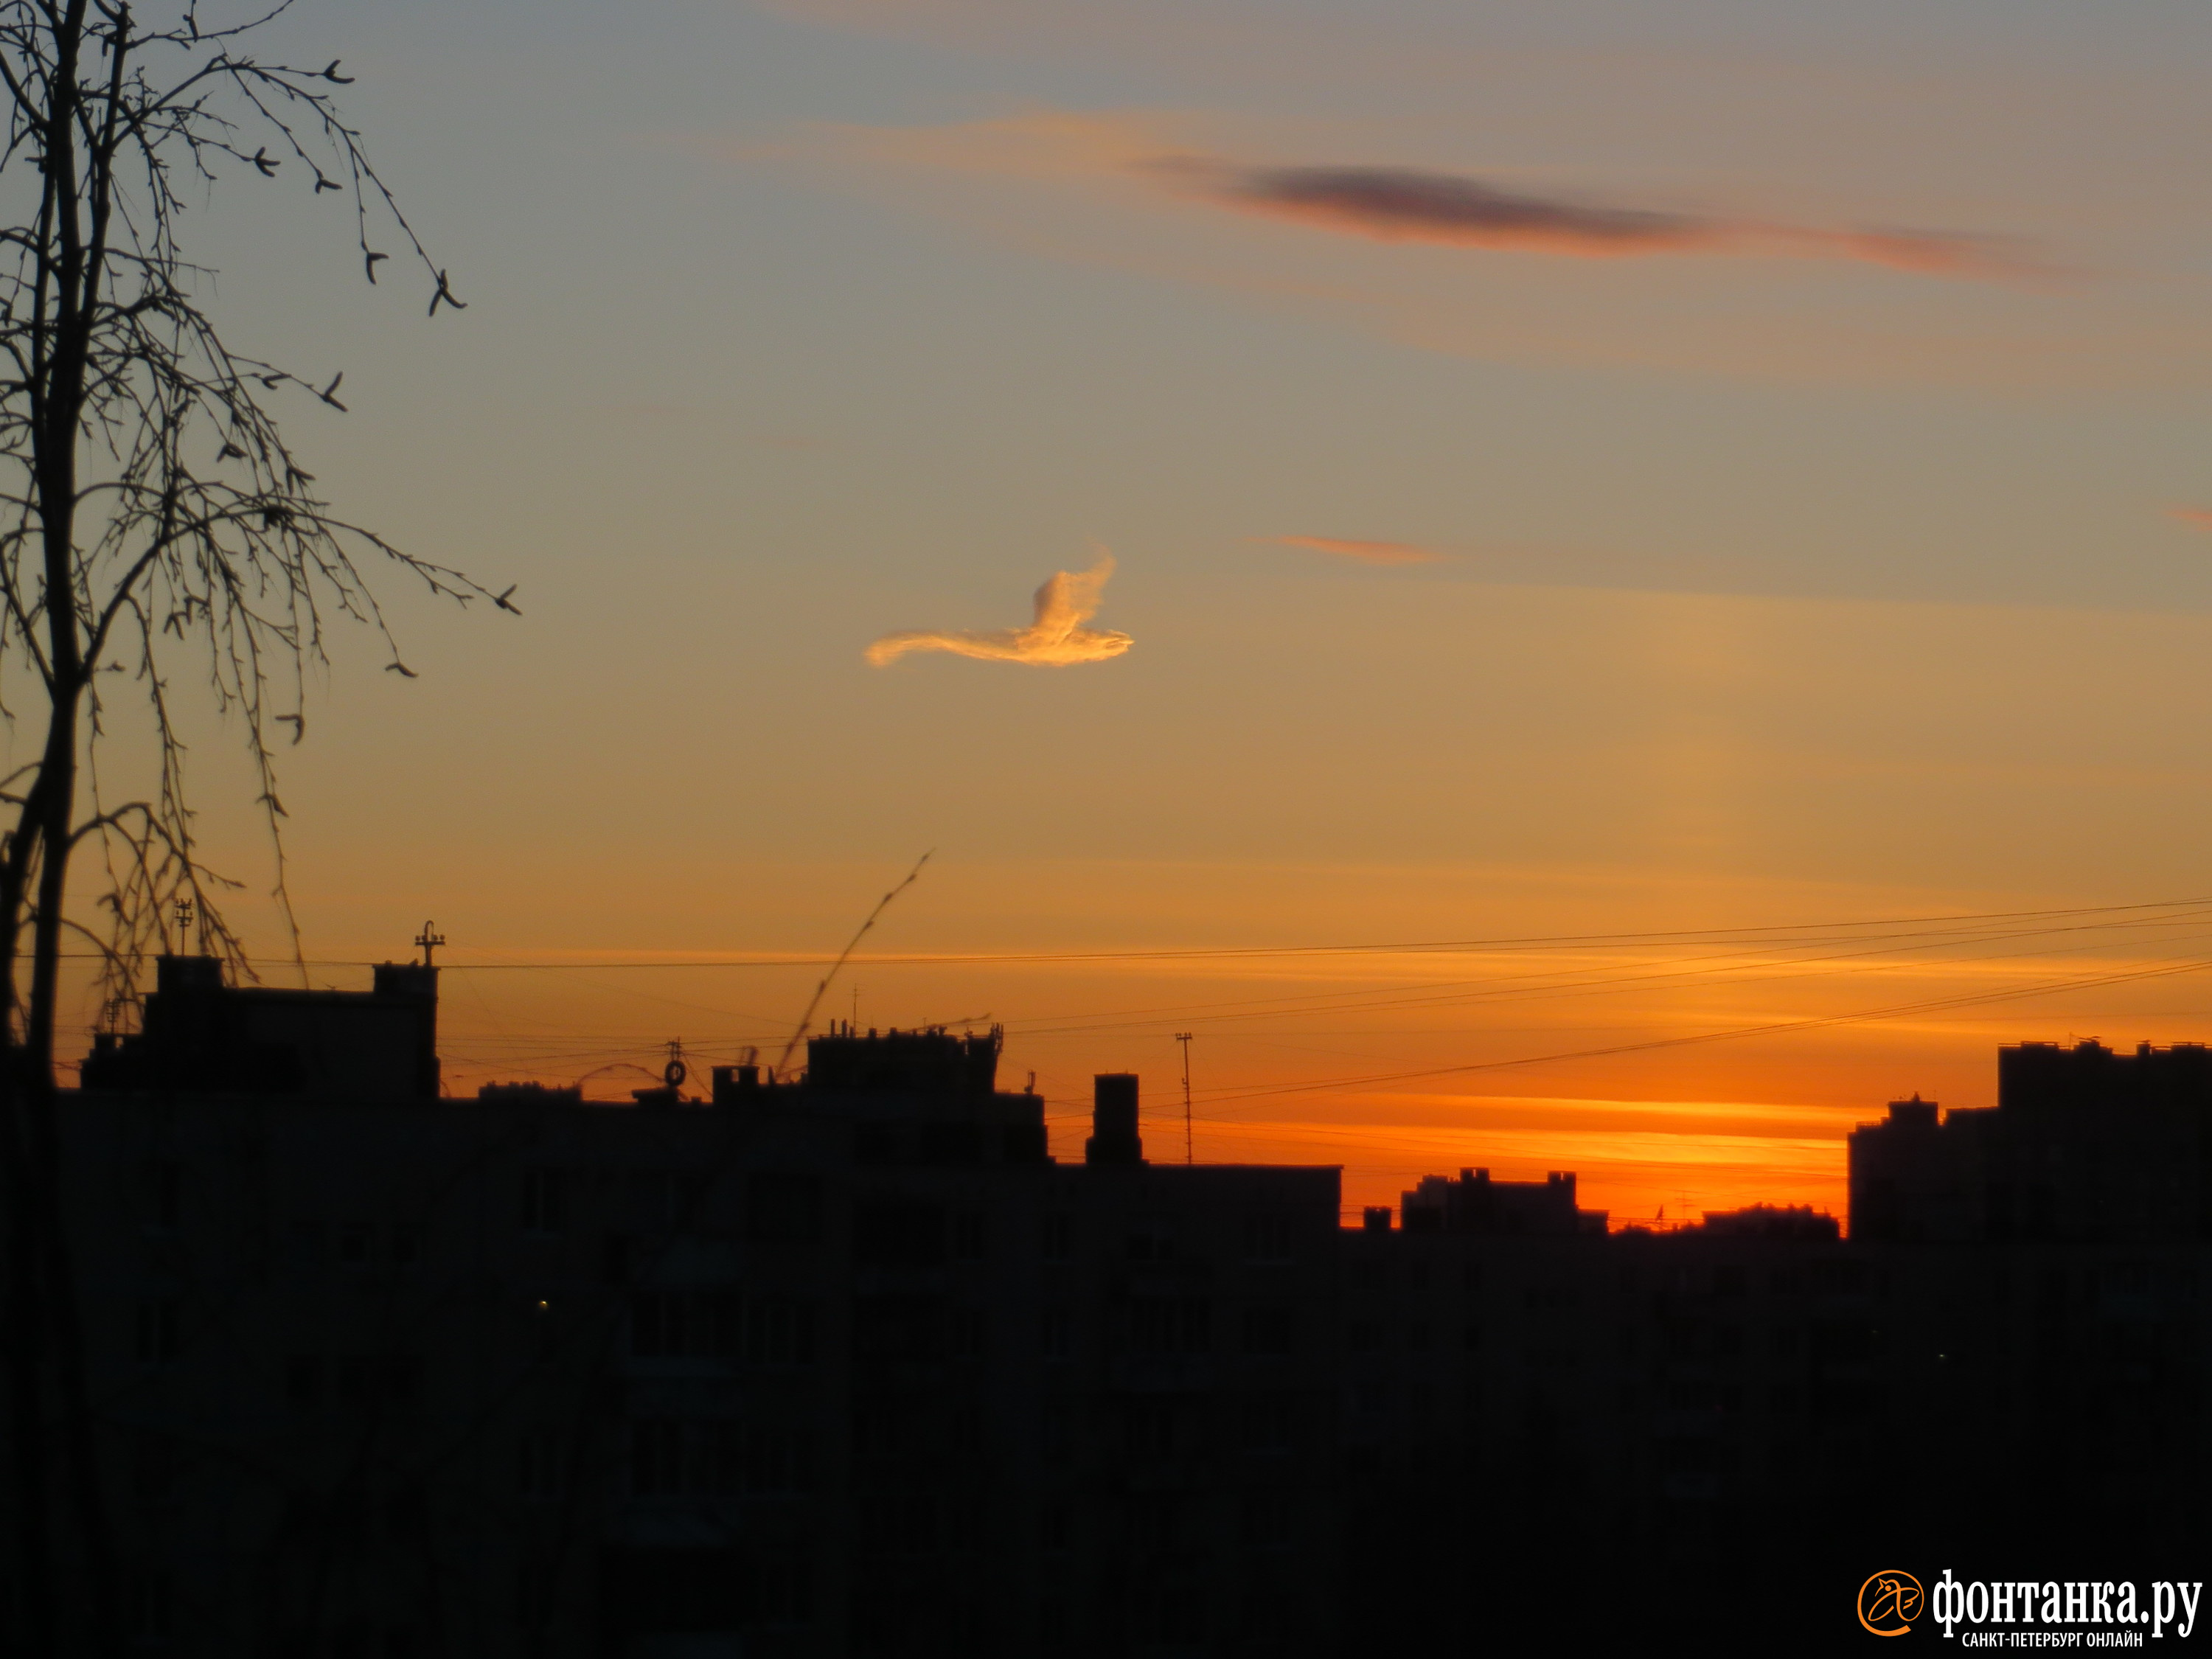 Это не птица. Странное облако появилось в Петербурге у солнечного столба